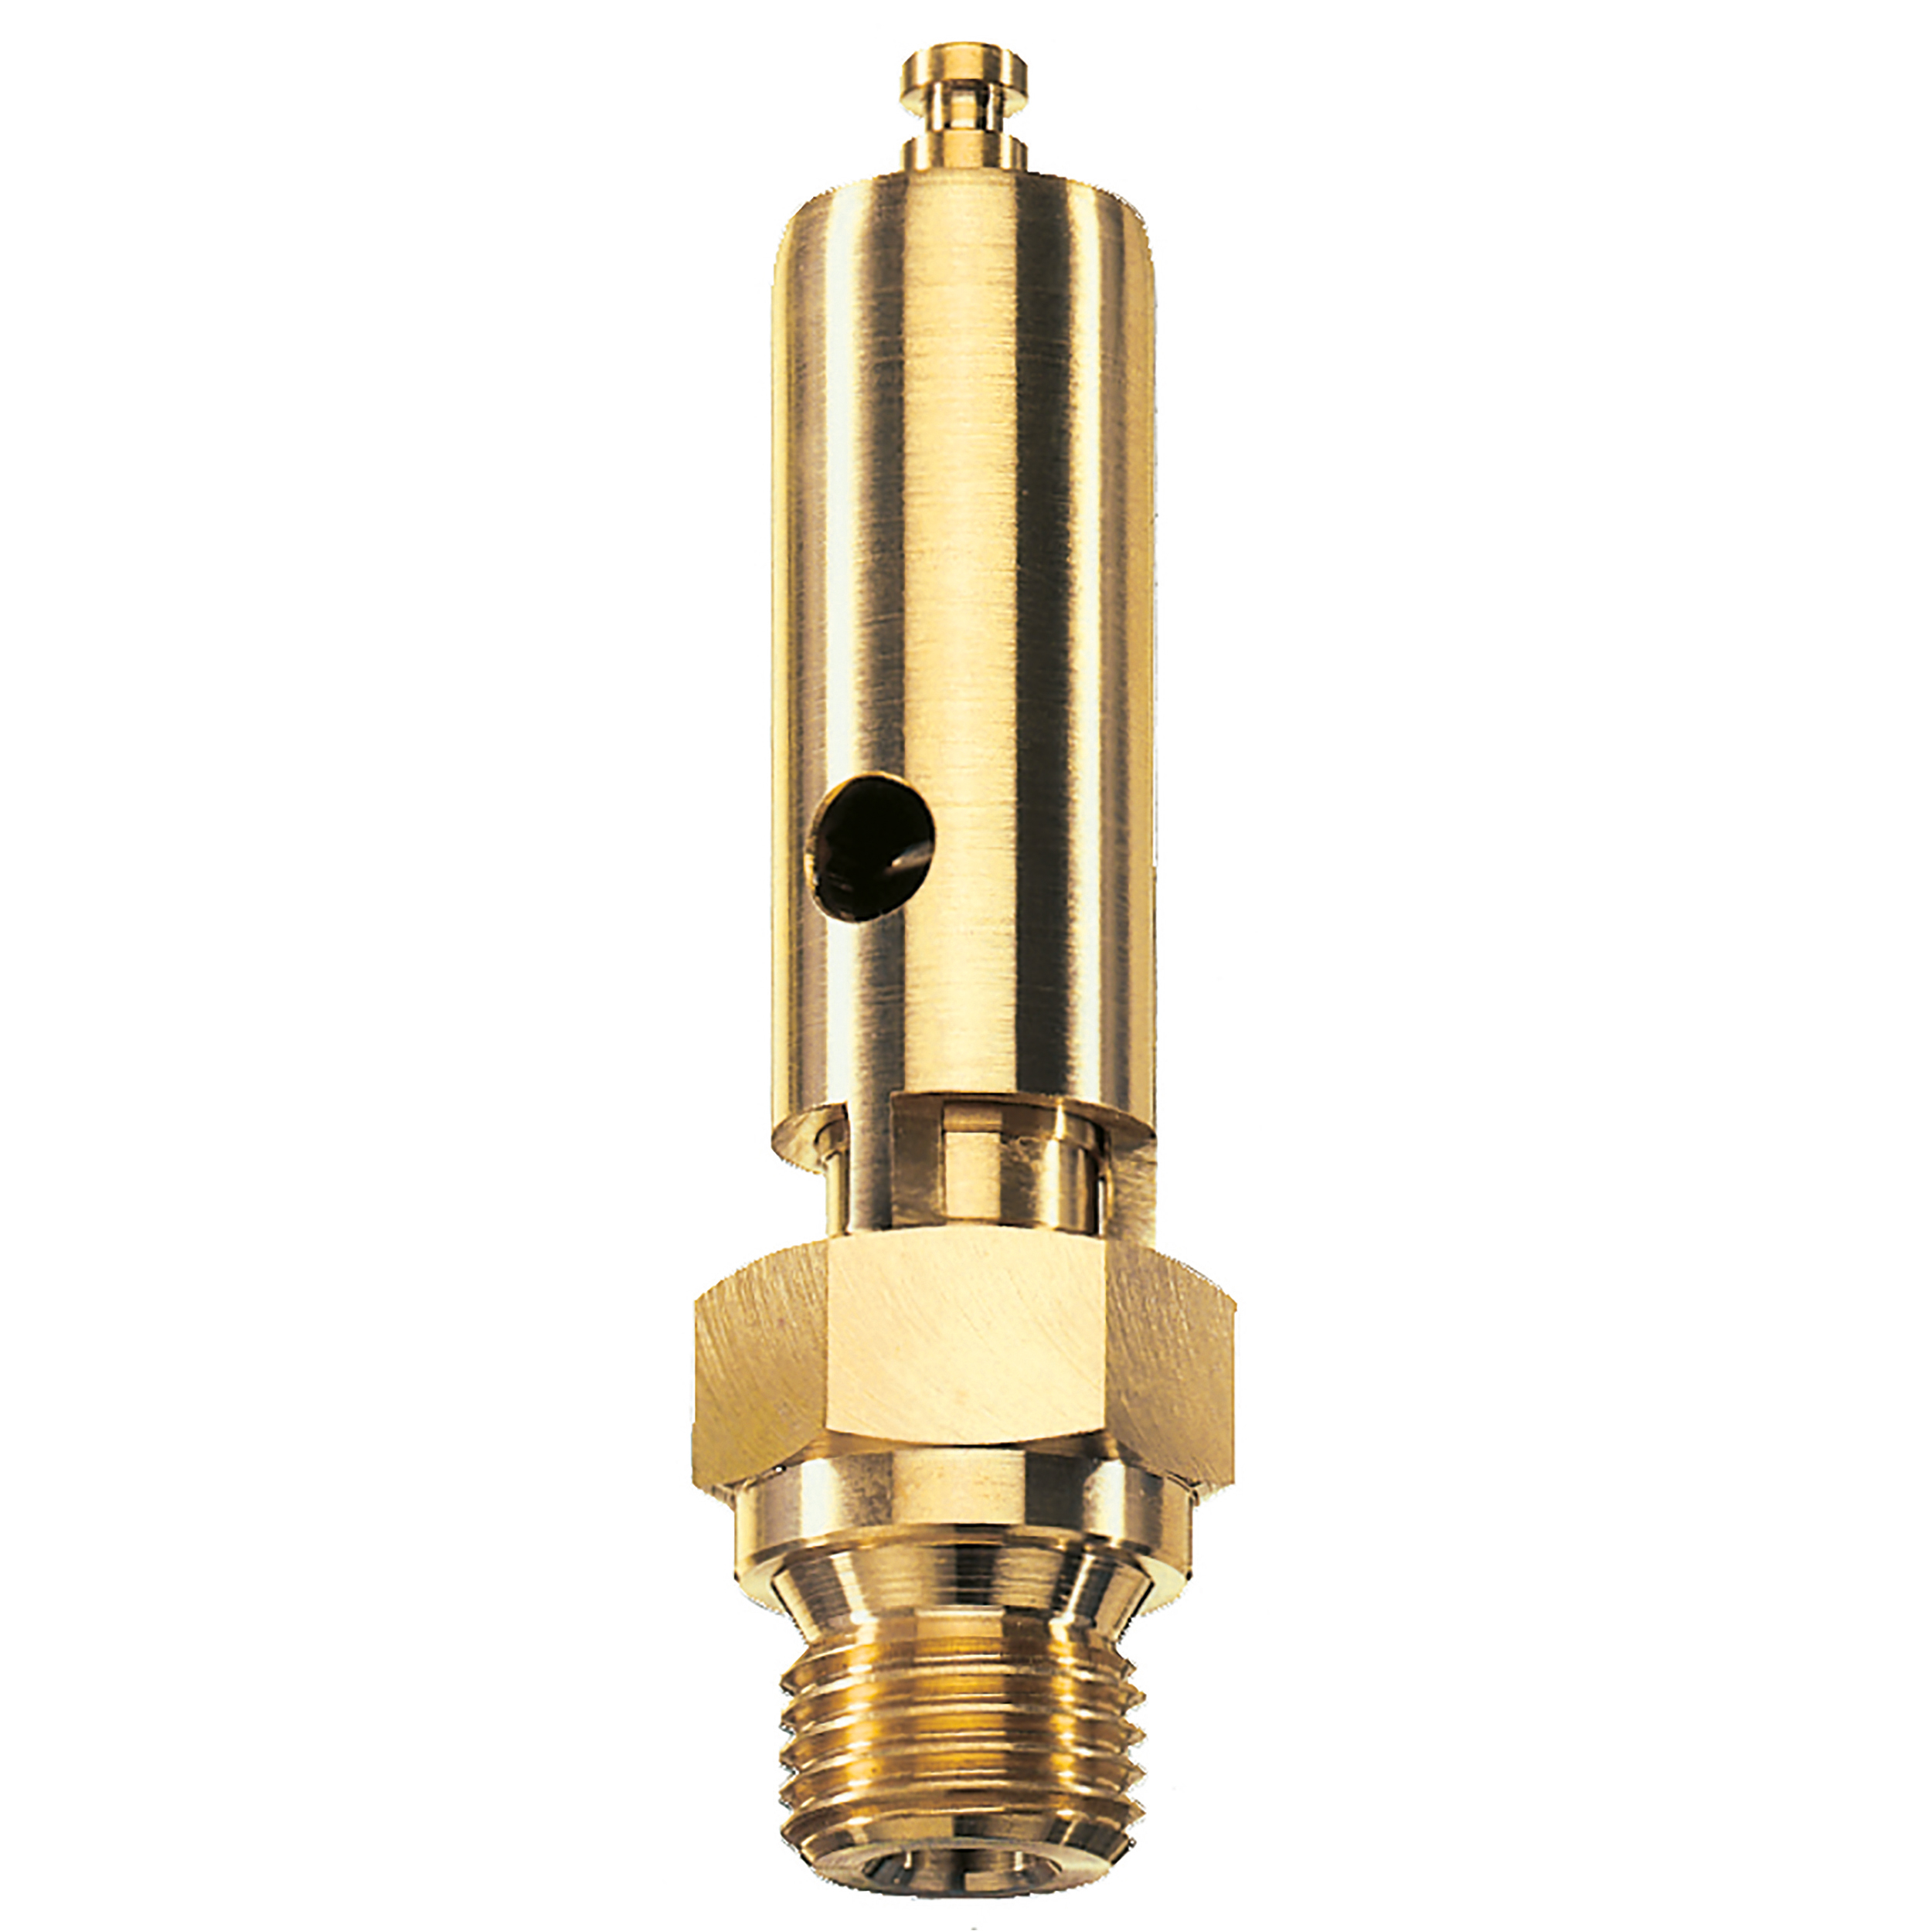 Savety valve component tested DN 6, G⅜, L: 60 mm, seal: FKM, set pressure: 10.9 bar (158,1 psi), TÜV approval